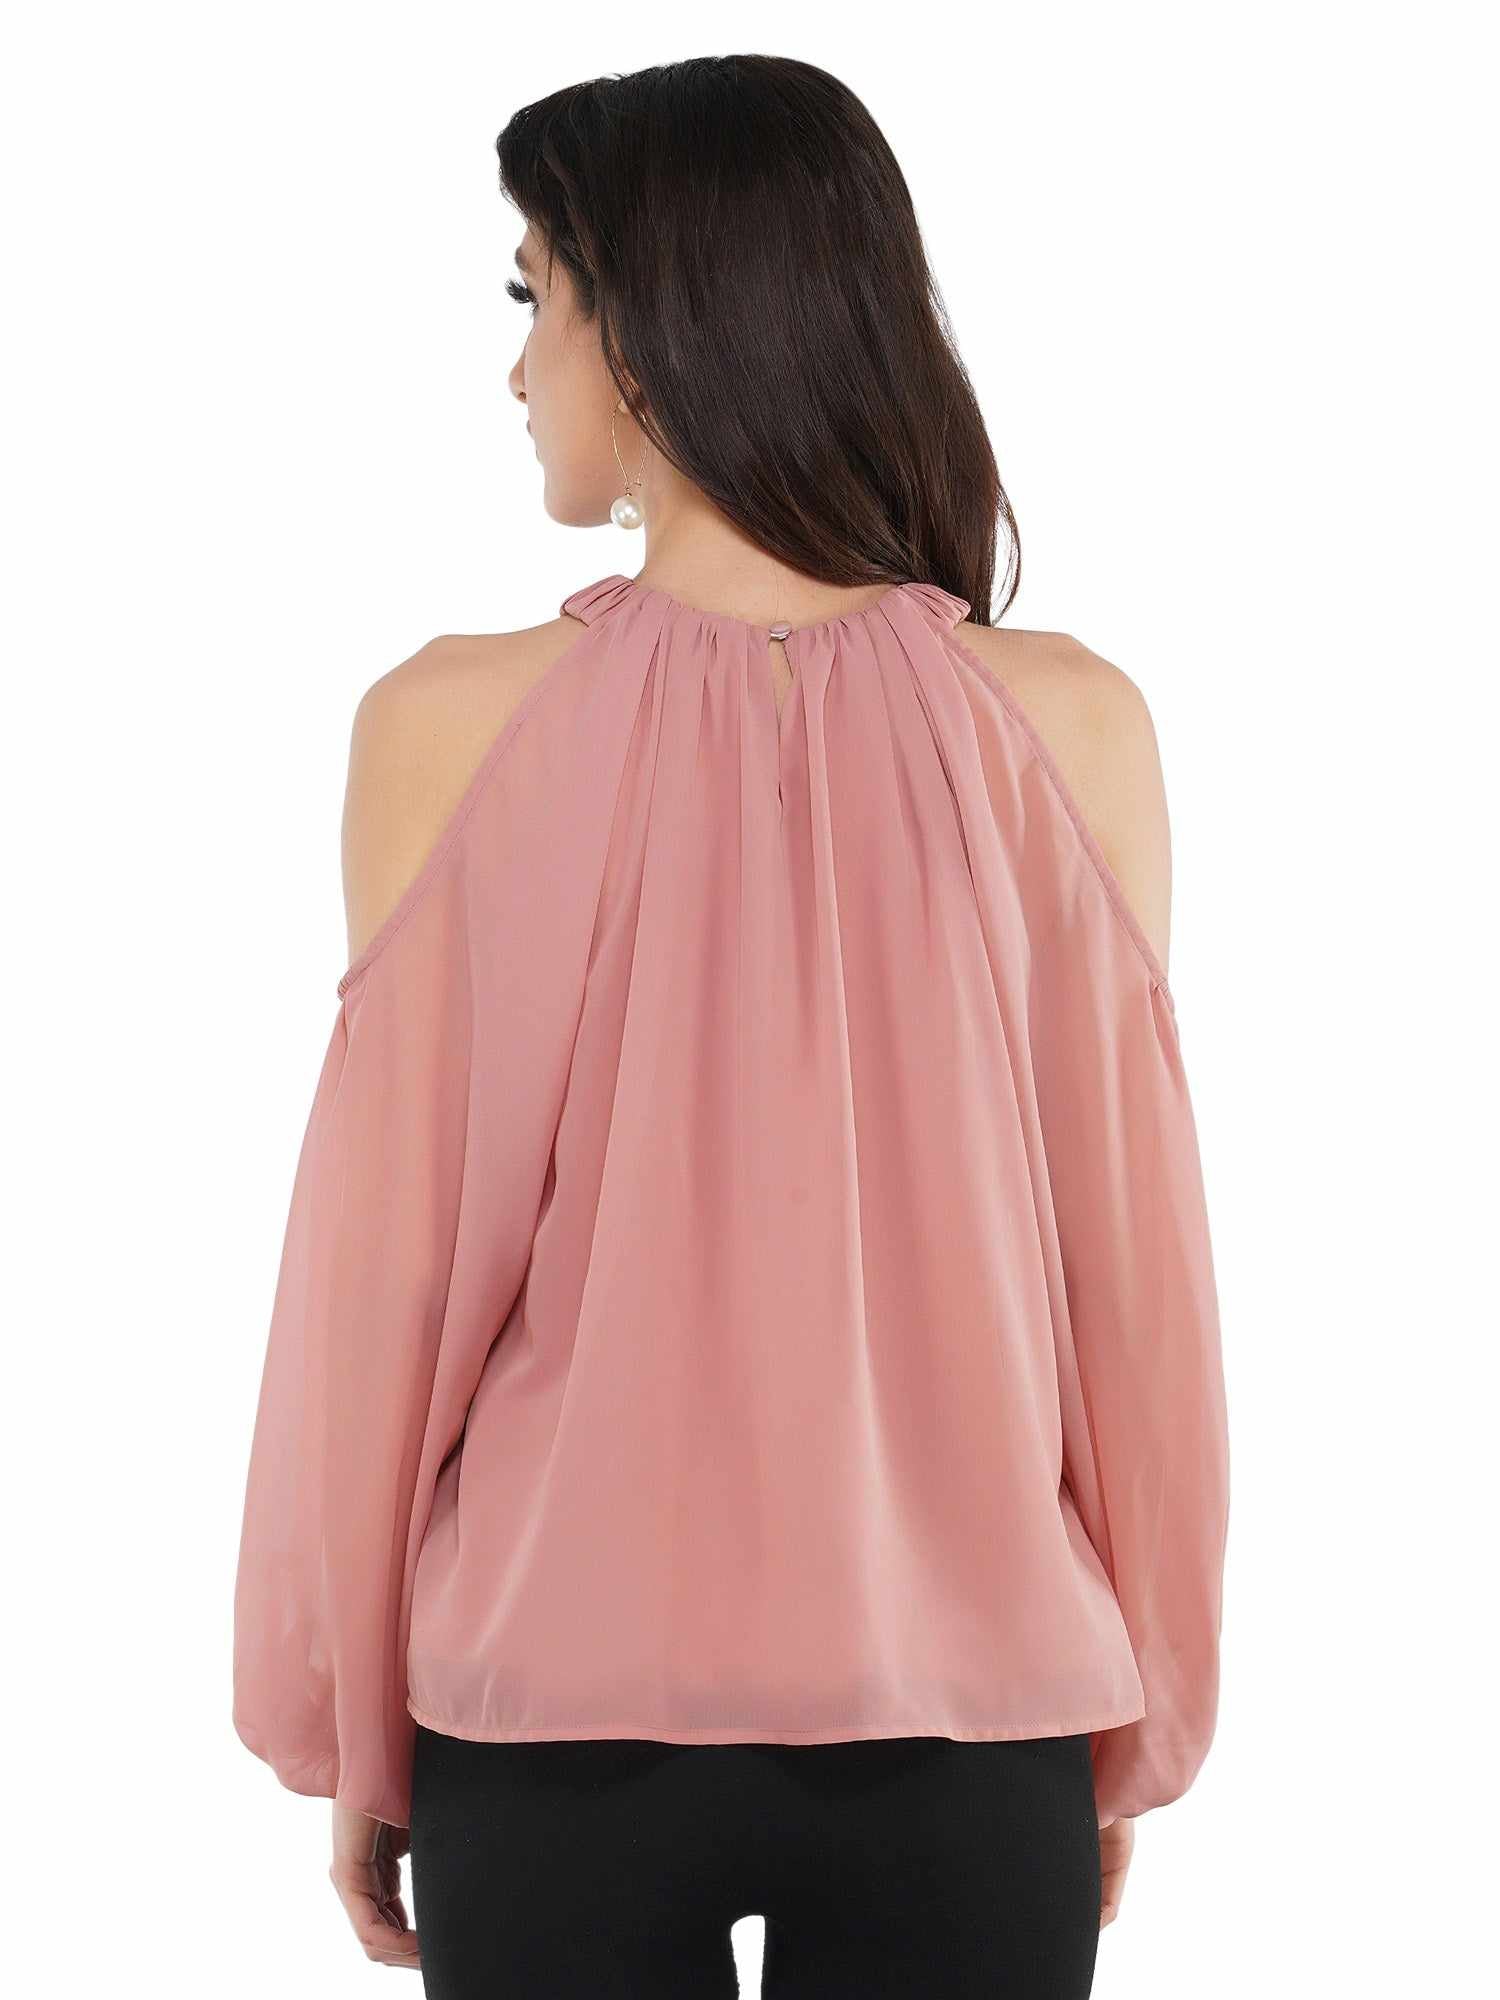 blush pink cold shoulder top